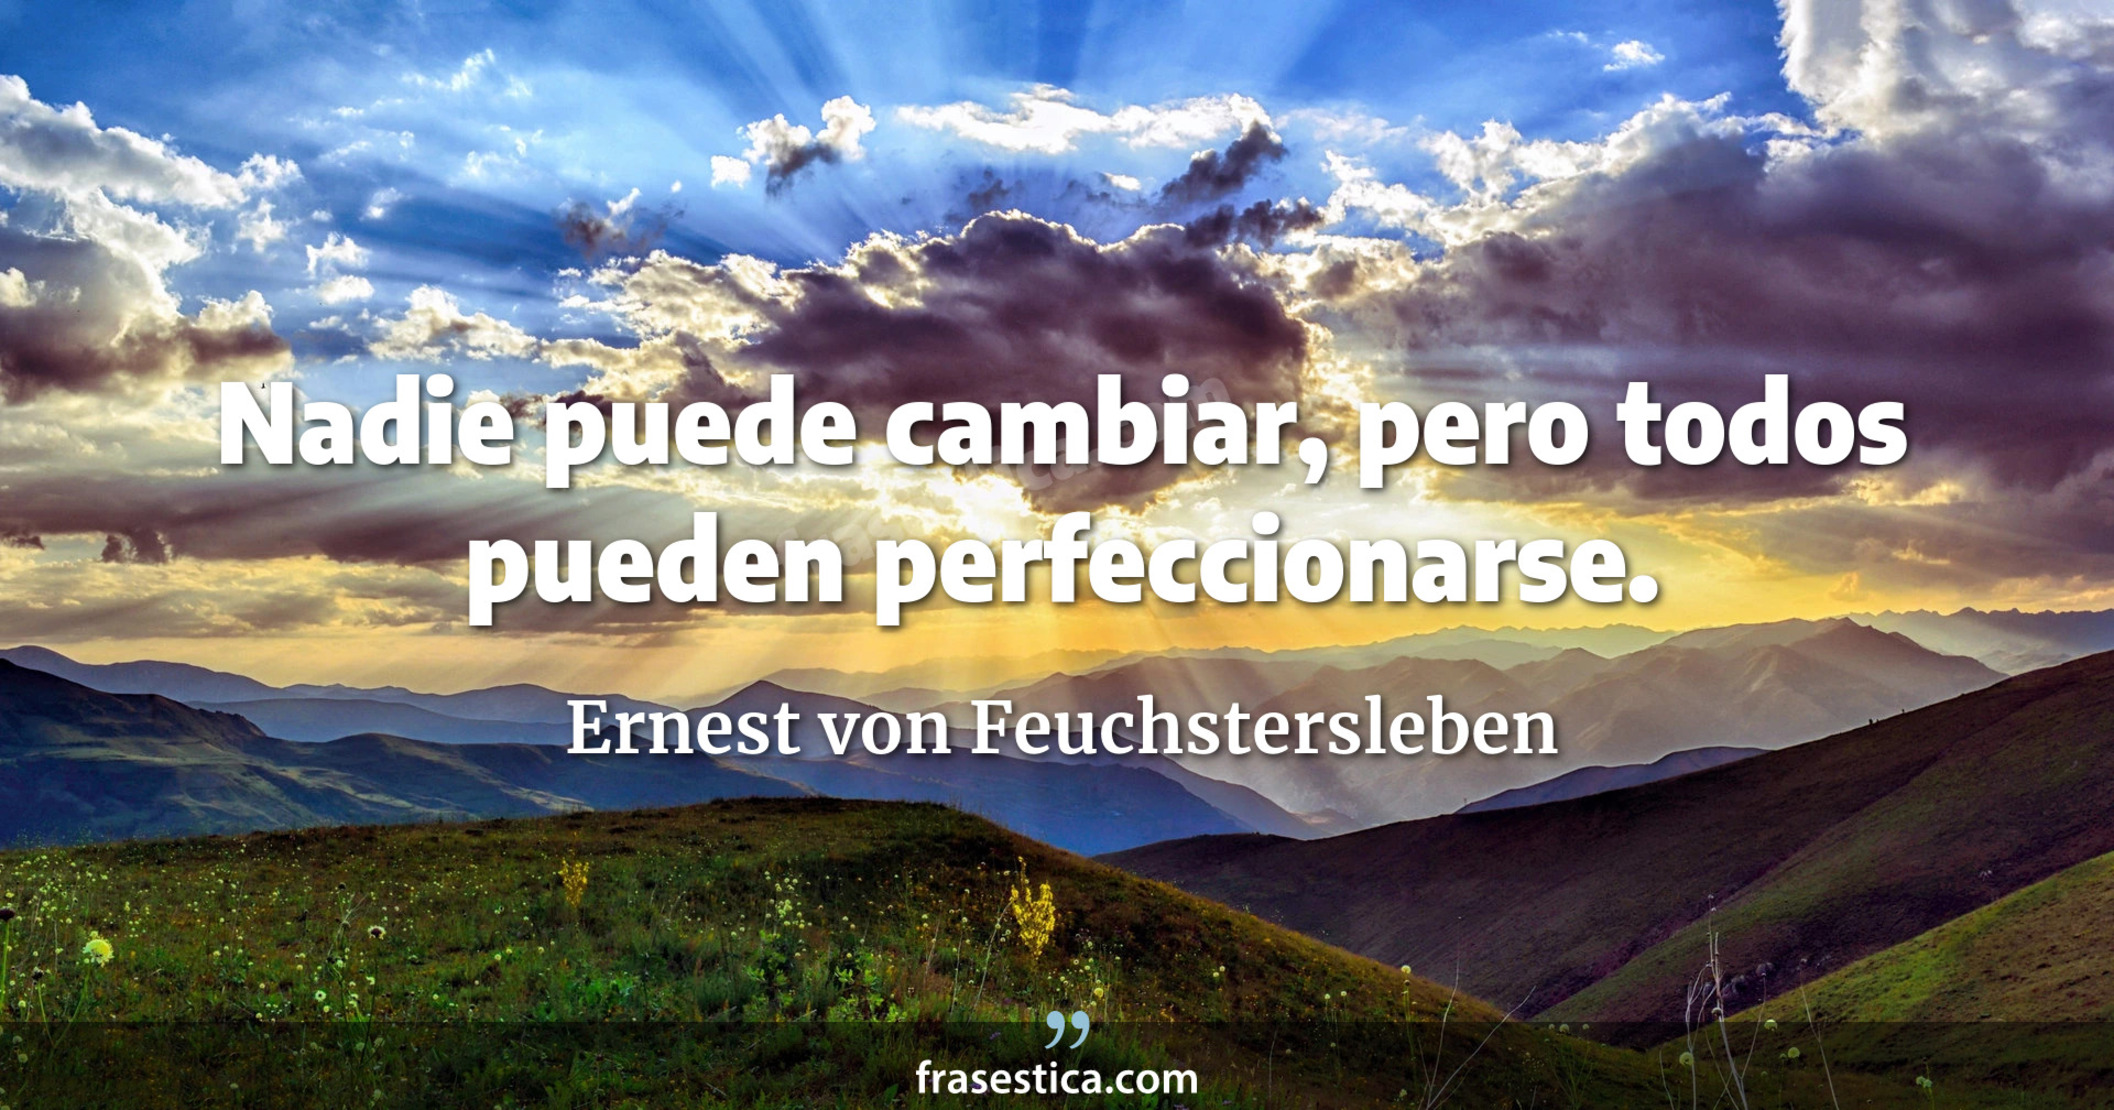 Nadie puede cambiar, pero todos pueden perfeccionarse. - Ernest von Feuchstersleben